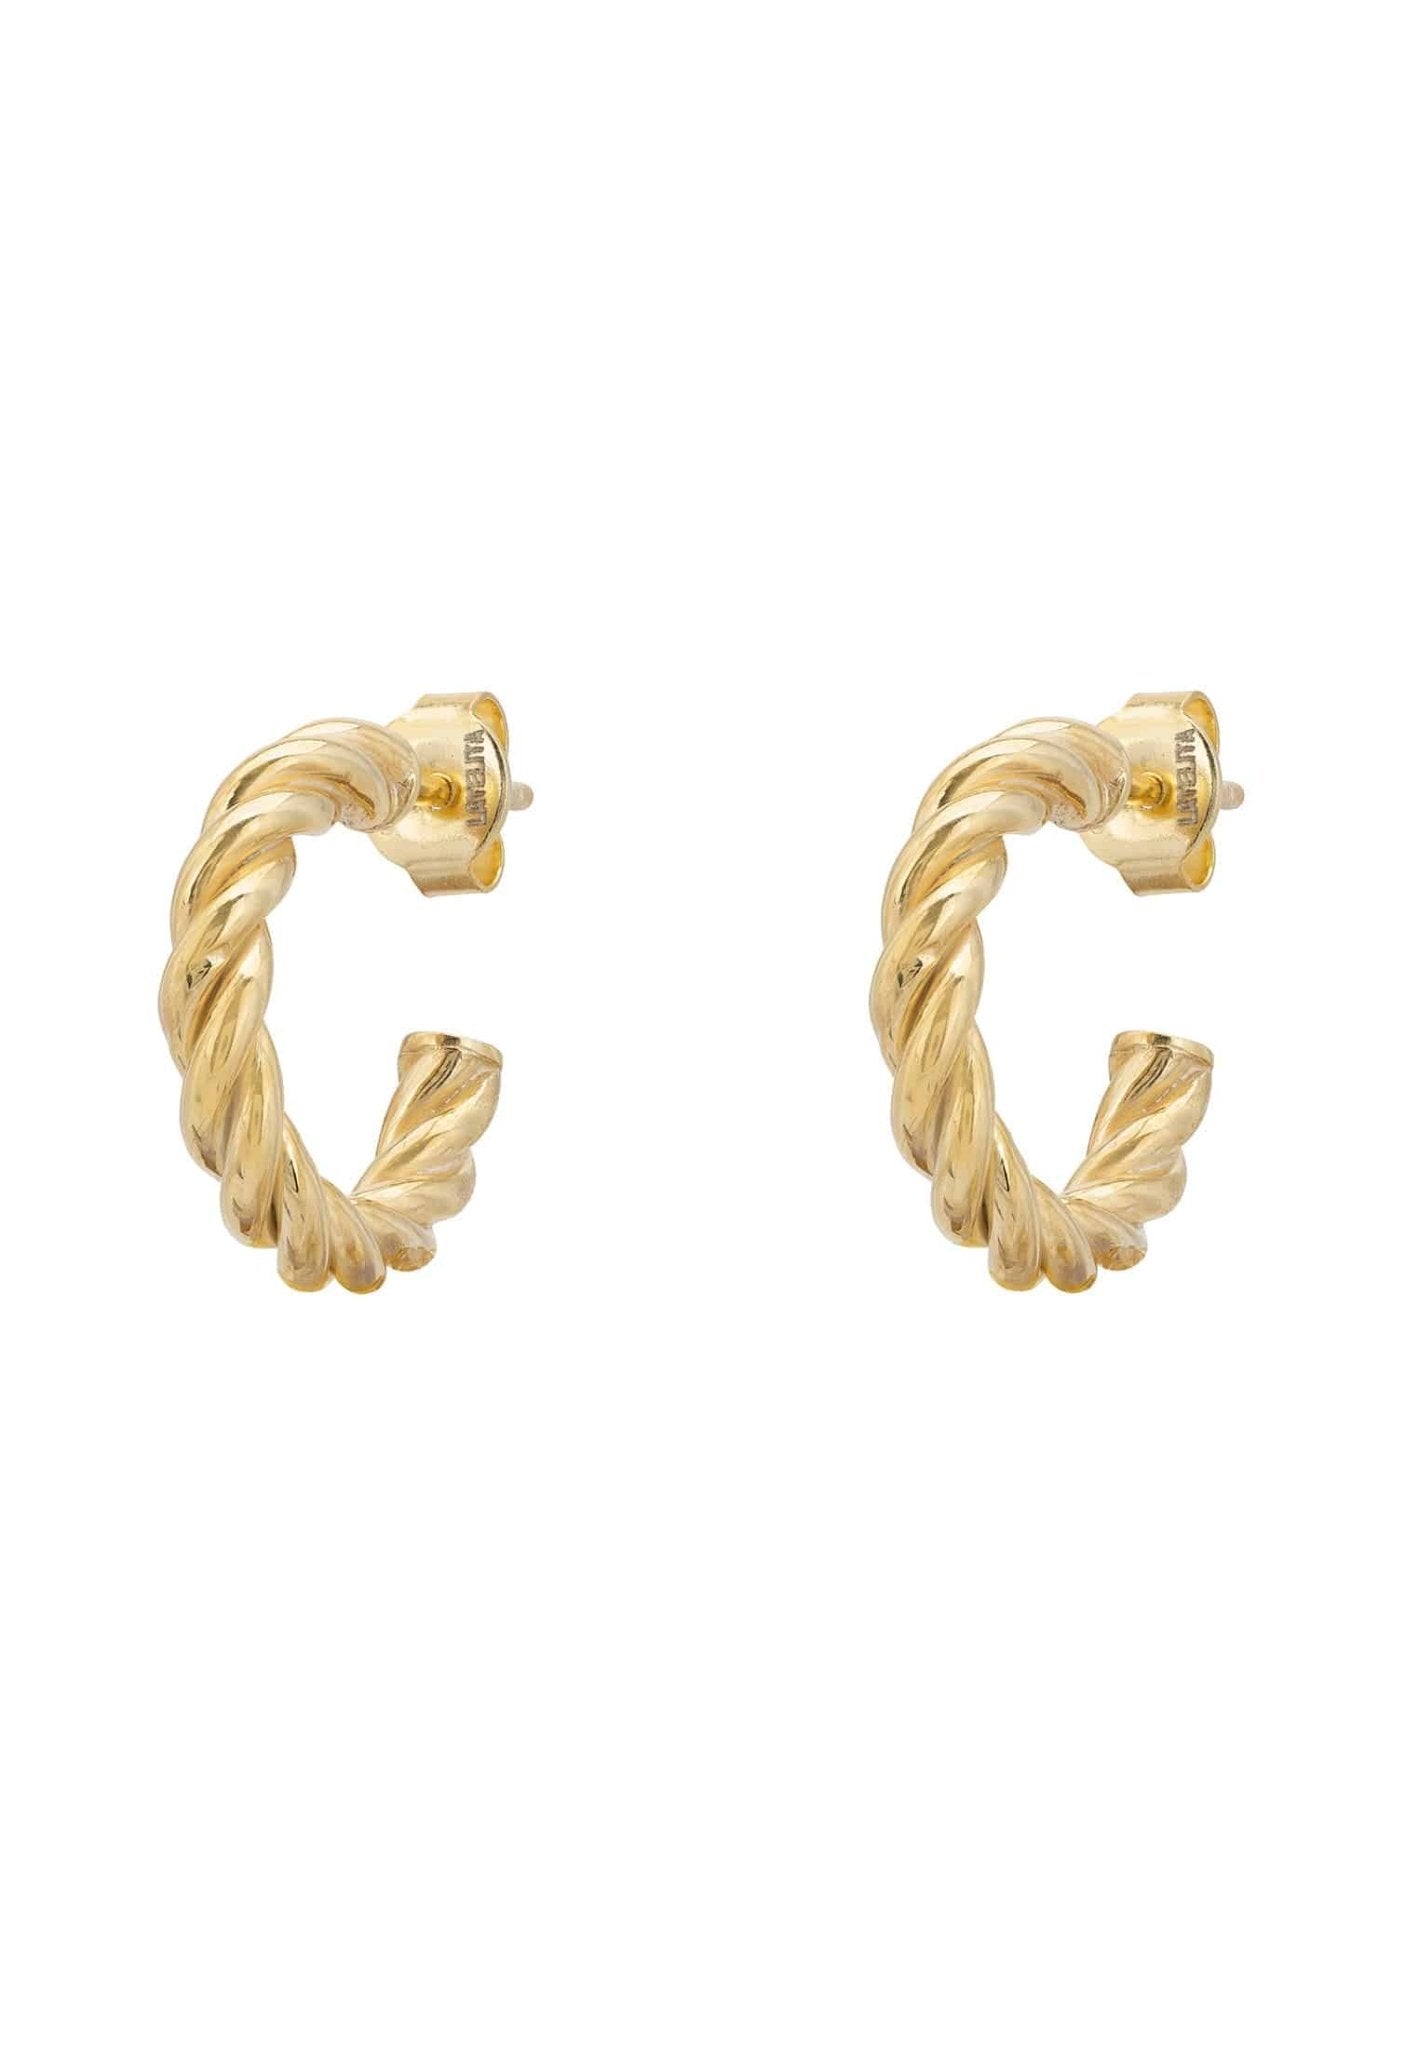 Twisted Rope Hoop Earrings Gold - LATELITA Earrings